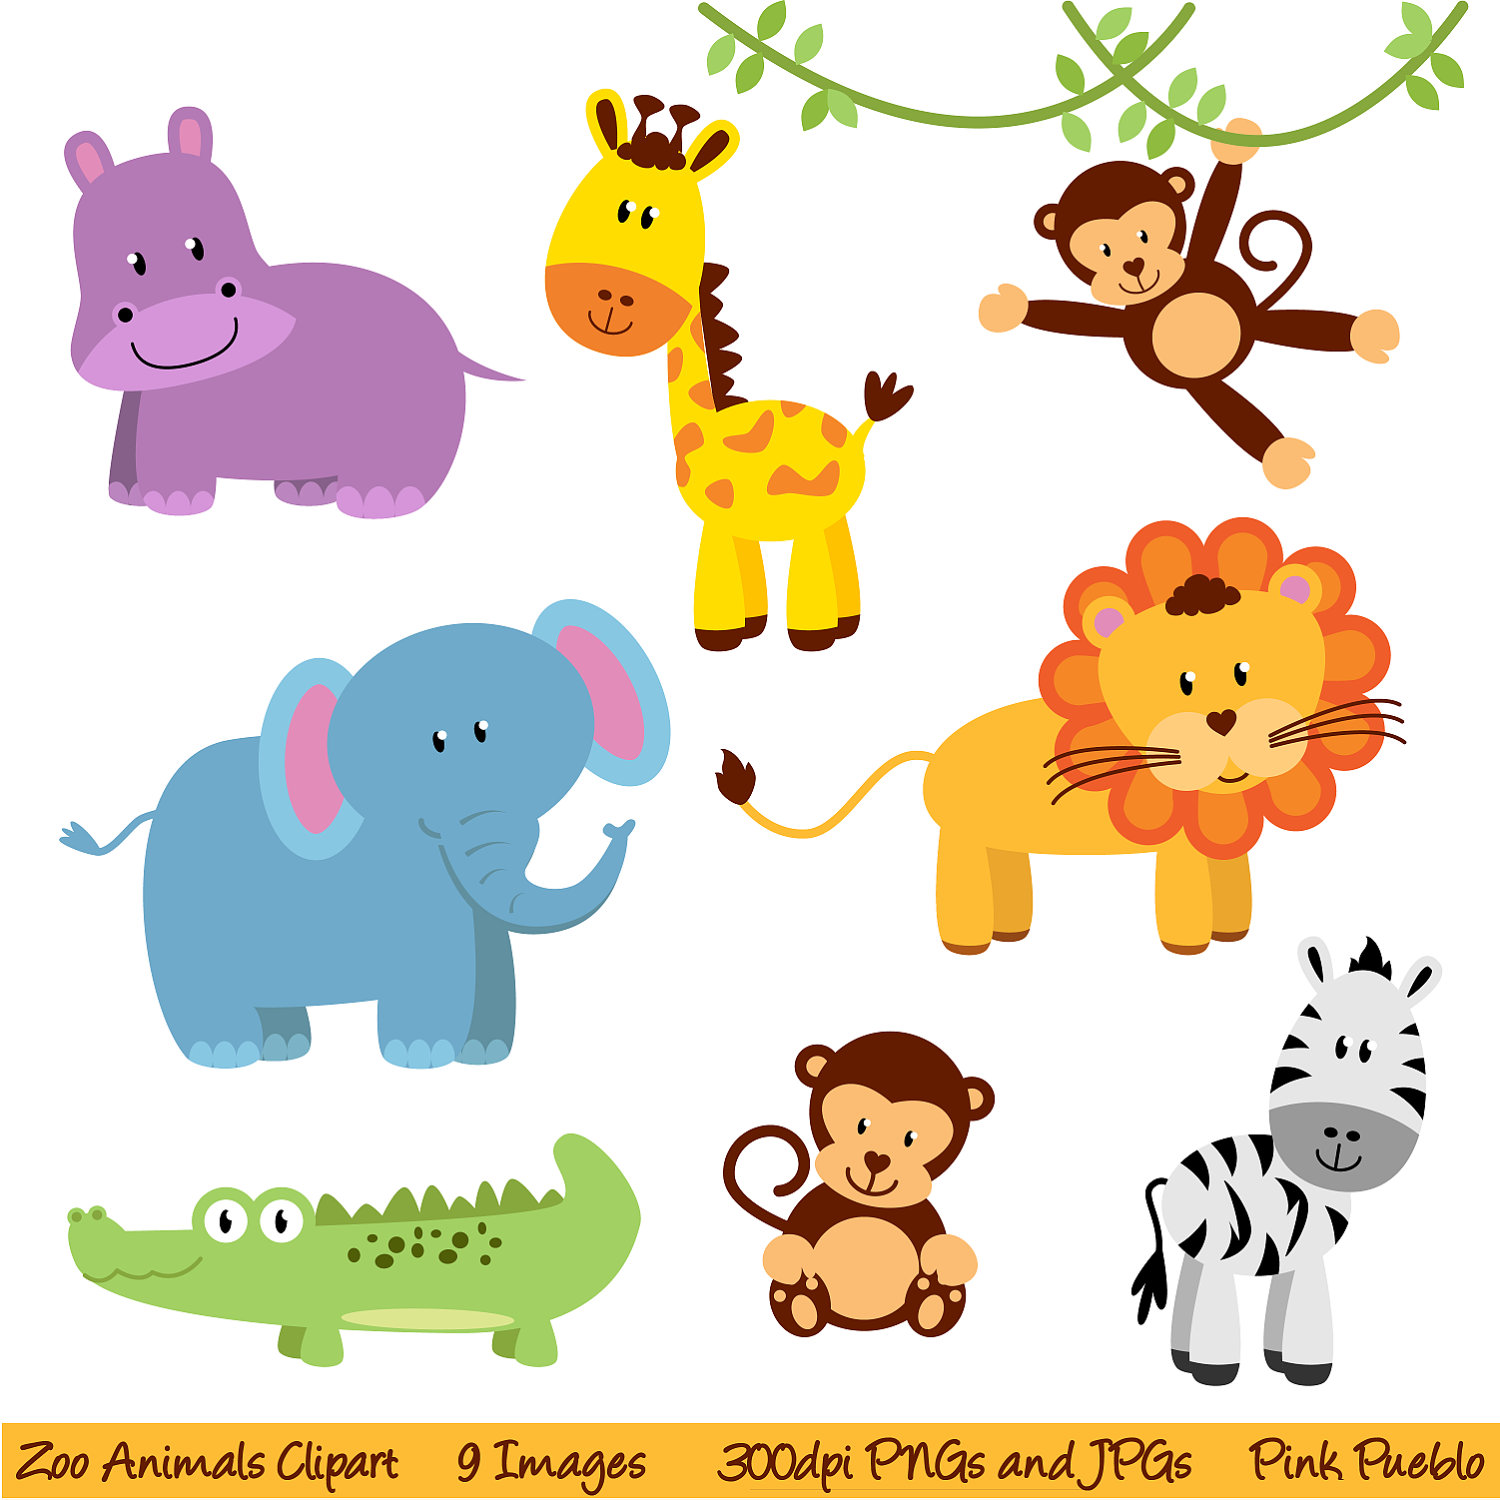 Zoo Animals Clipart Zoo Anima - Zoo Animals Clip Art